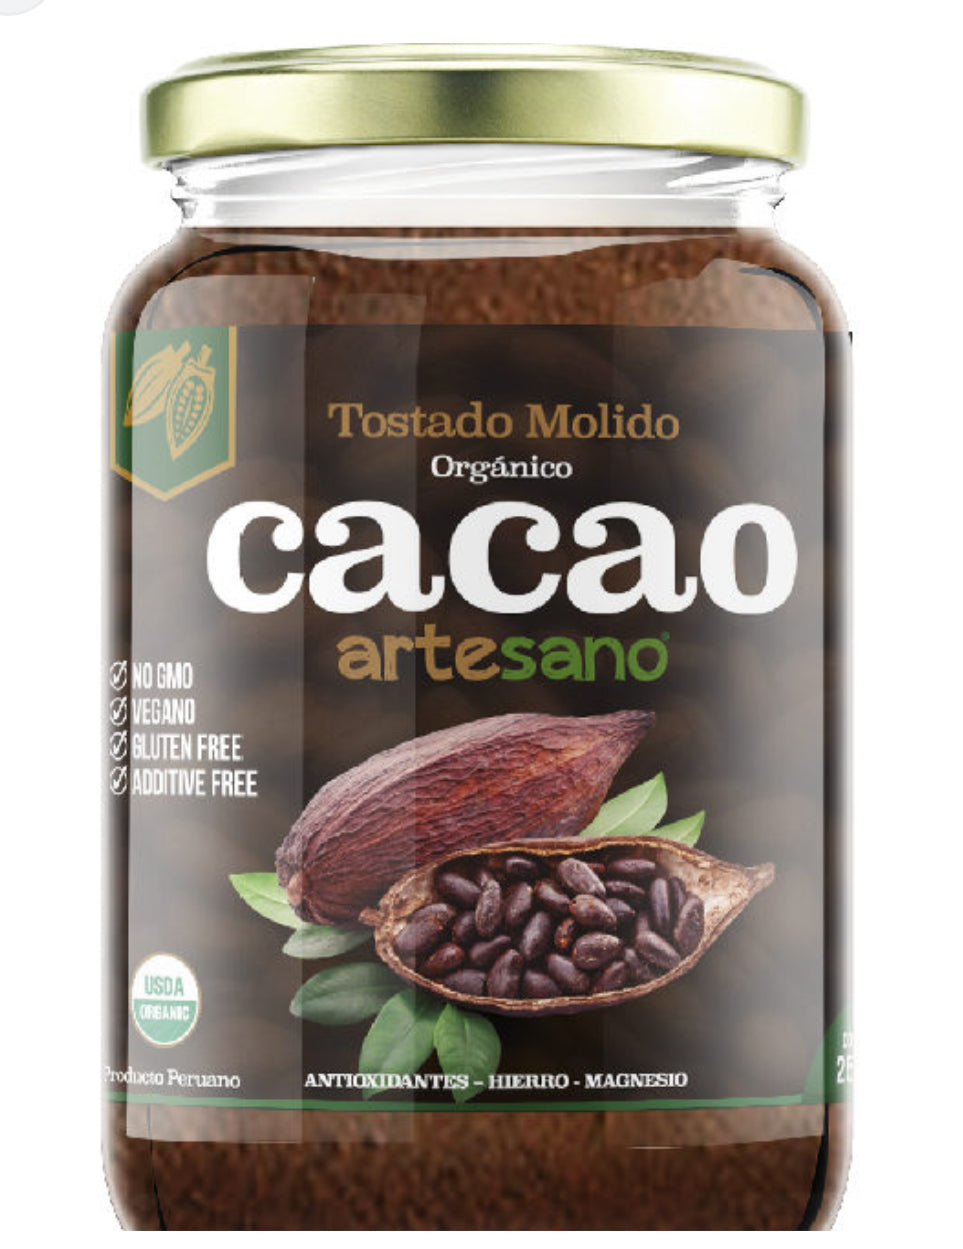 Cacao tostado molido x 160gr Artesano